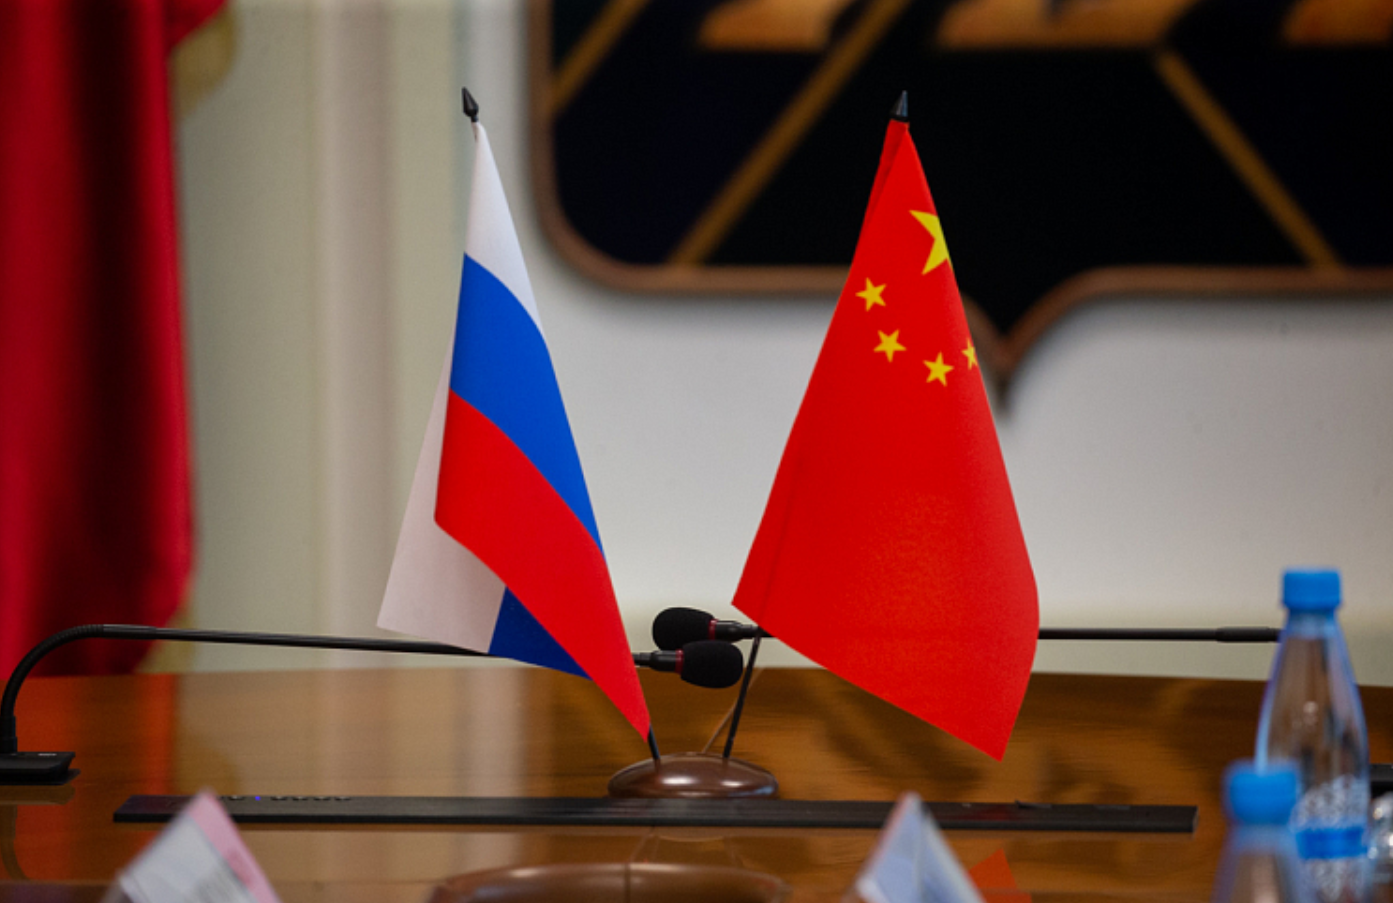 МИД Китая осудил попытки США ввести санкции за покупку нефти и газа у России